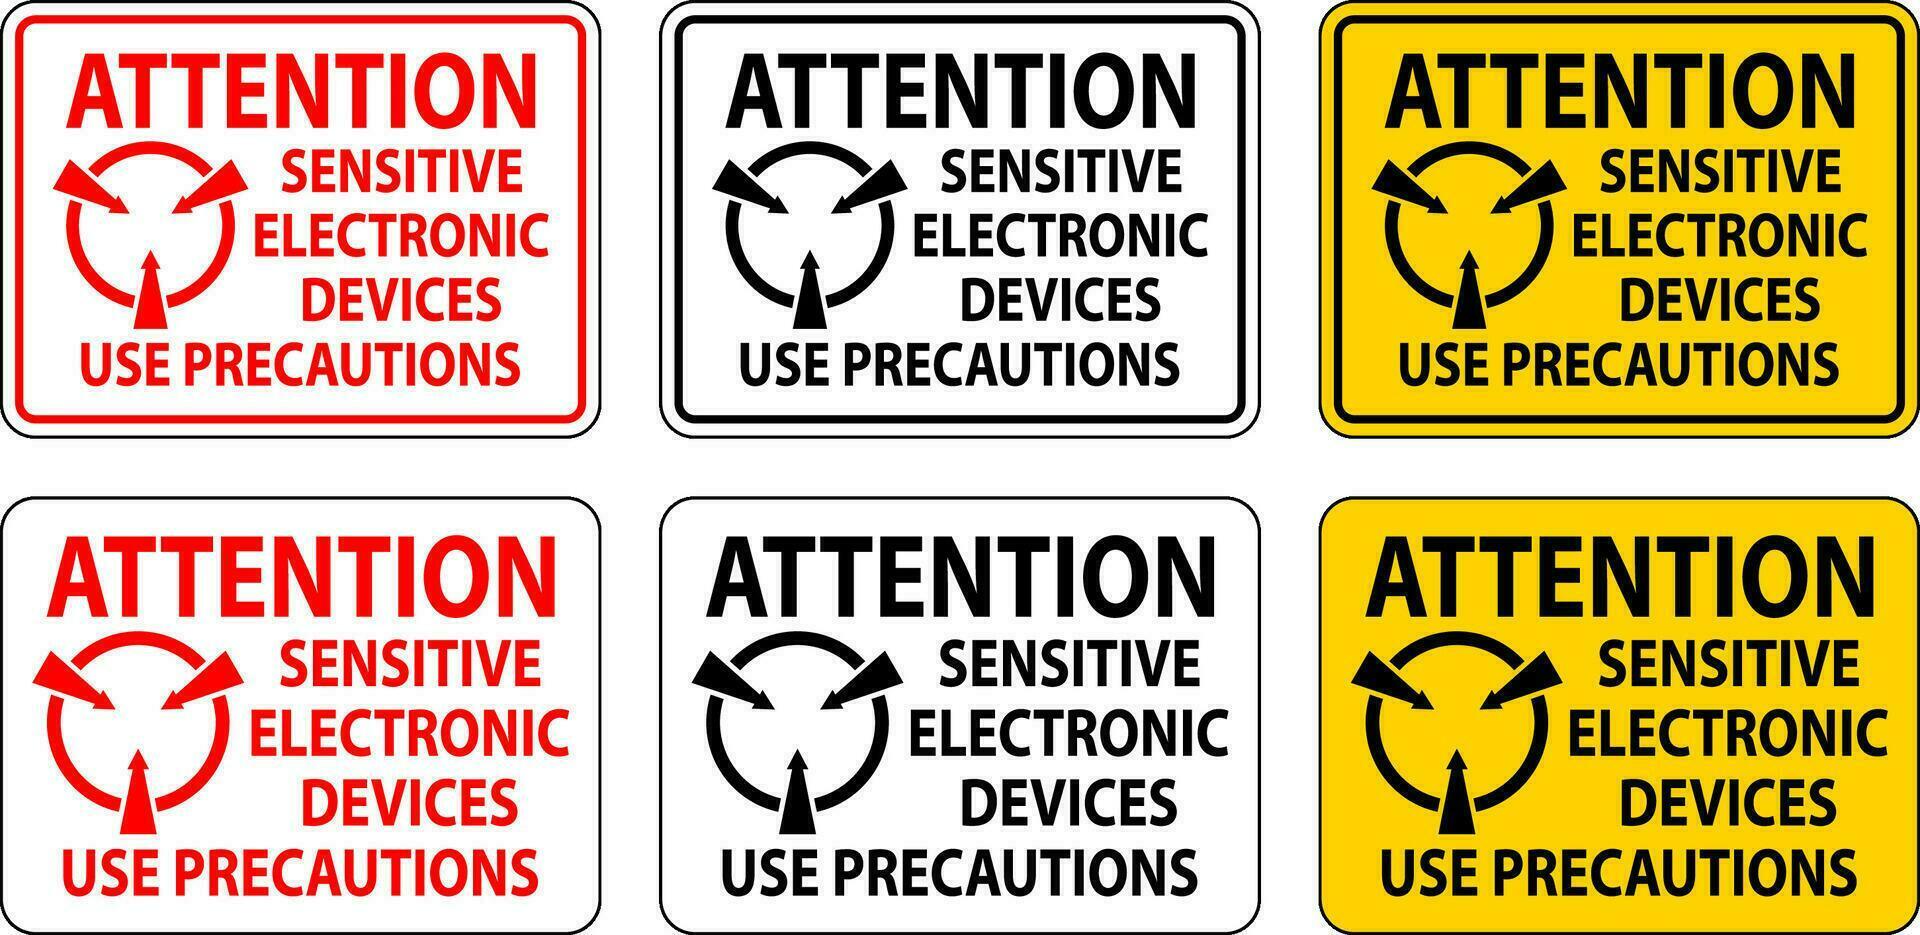 statique avertissement signe attention - sensible électronique dispositifs utilisation précautions vecteur